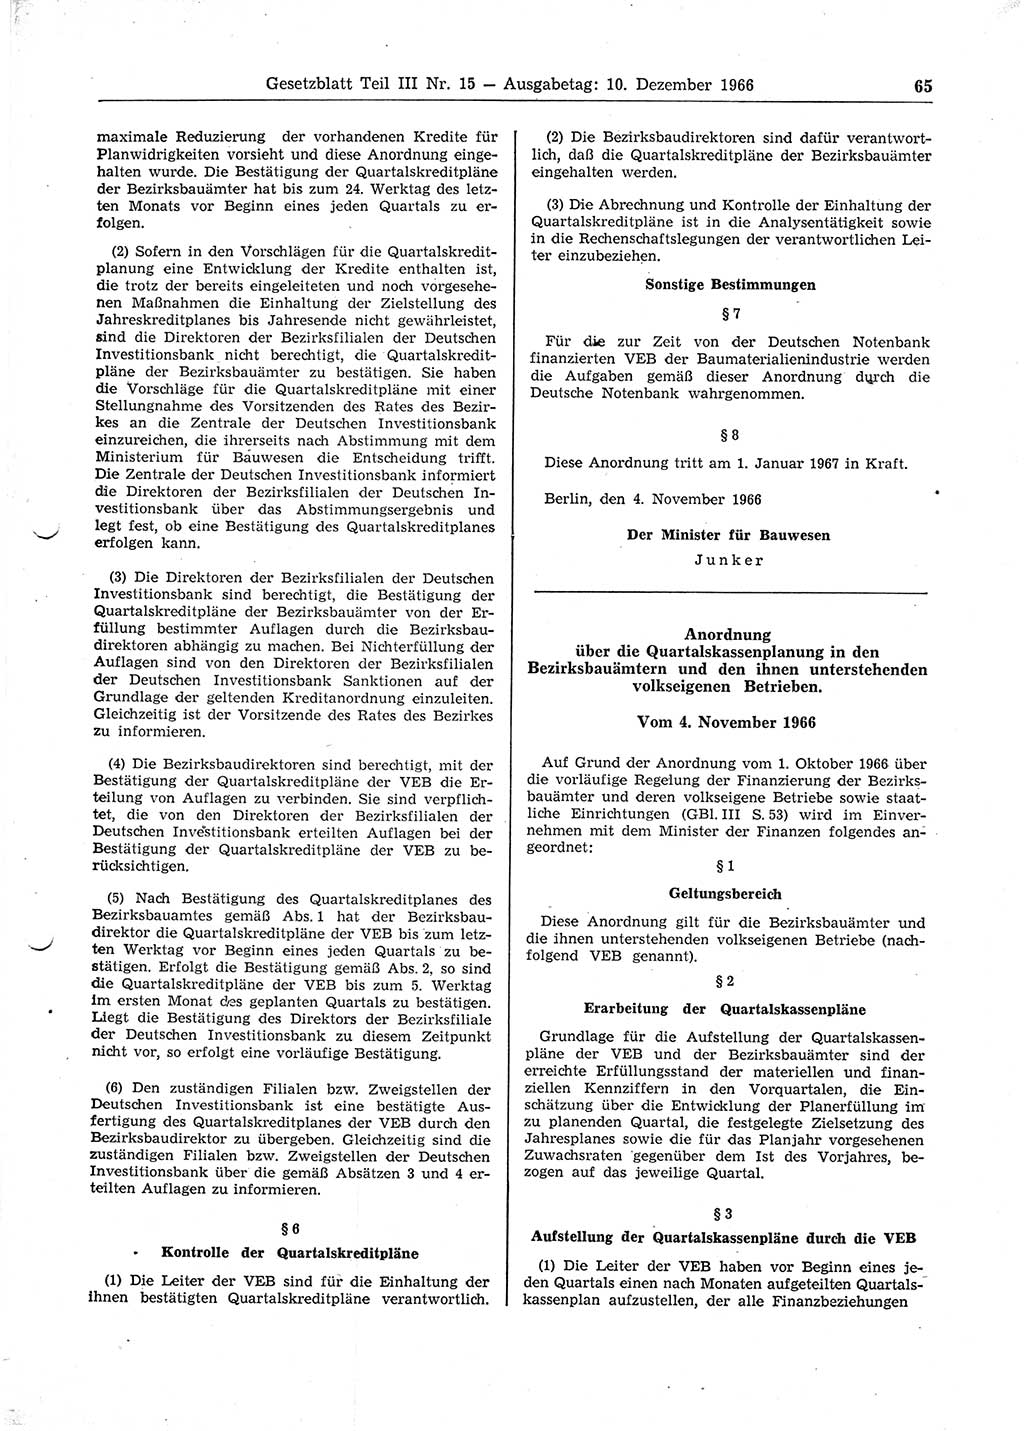 Gesetzblatt (GBl.) der Deutschen Demokratischen Republik (DDR) Teil ⅠⅠⅠ 1966, Seite 65 (GBl. DDR ⅠⅠⅠ 1966, S. 65)